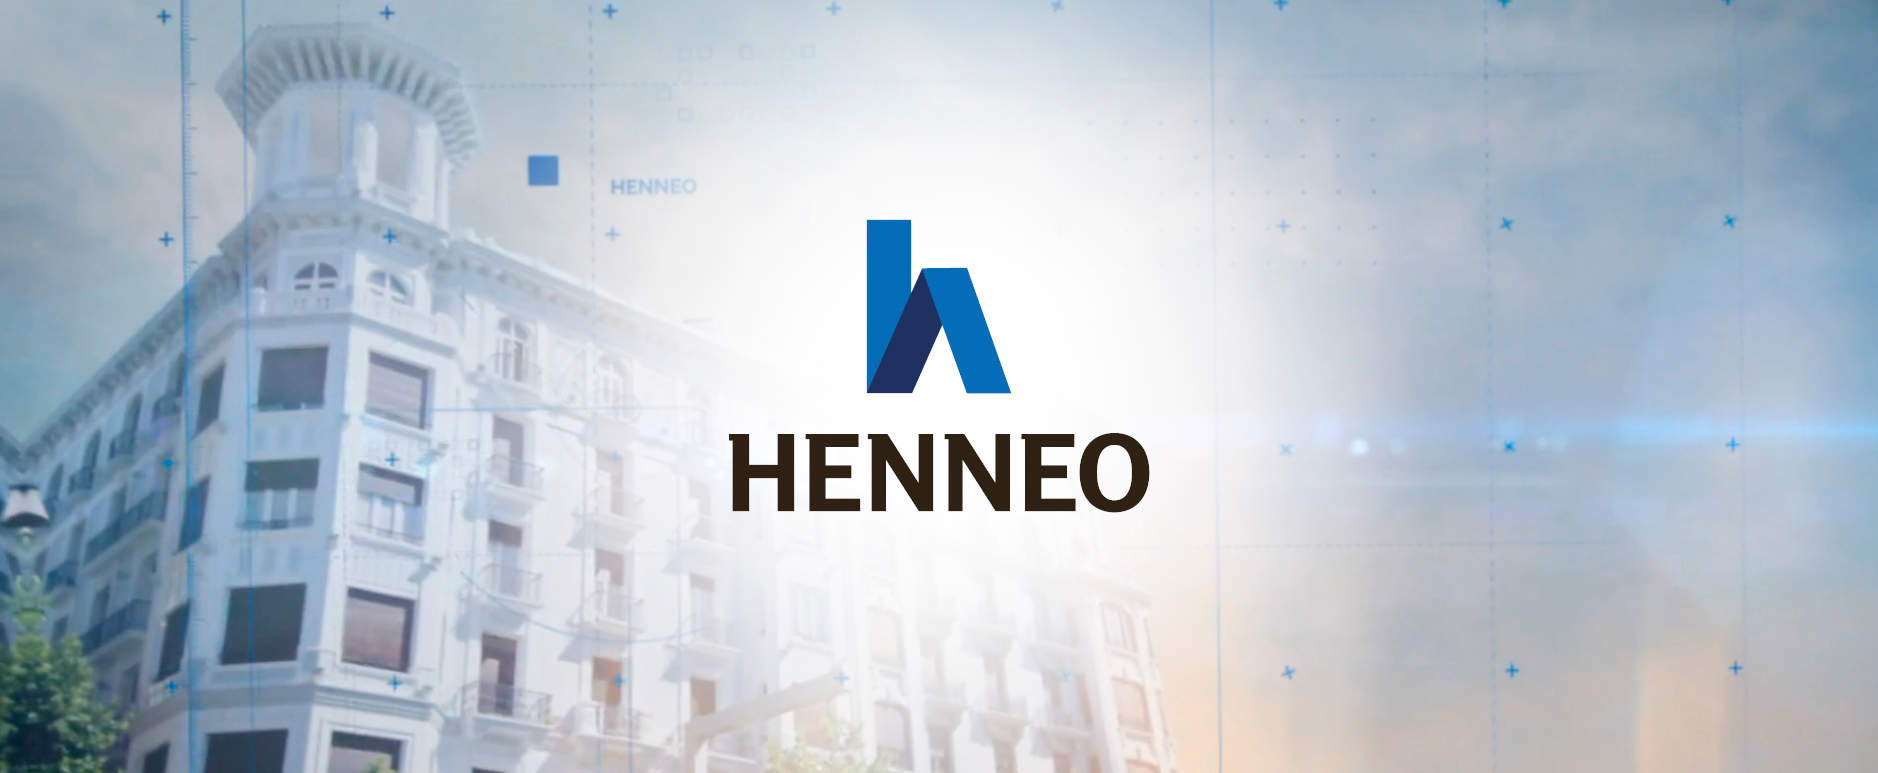 El grupo Henneo se hace con las cabeceras de Axel Springer España